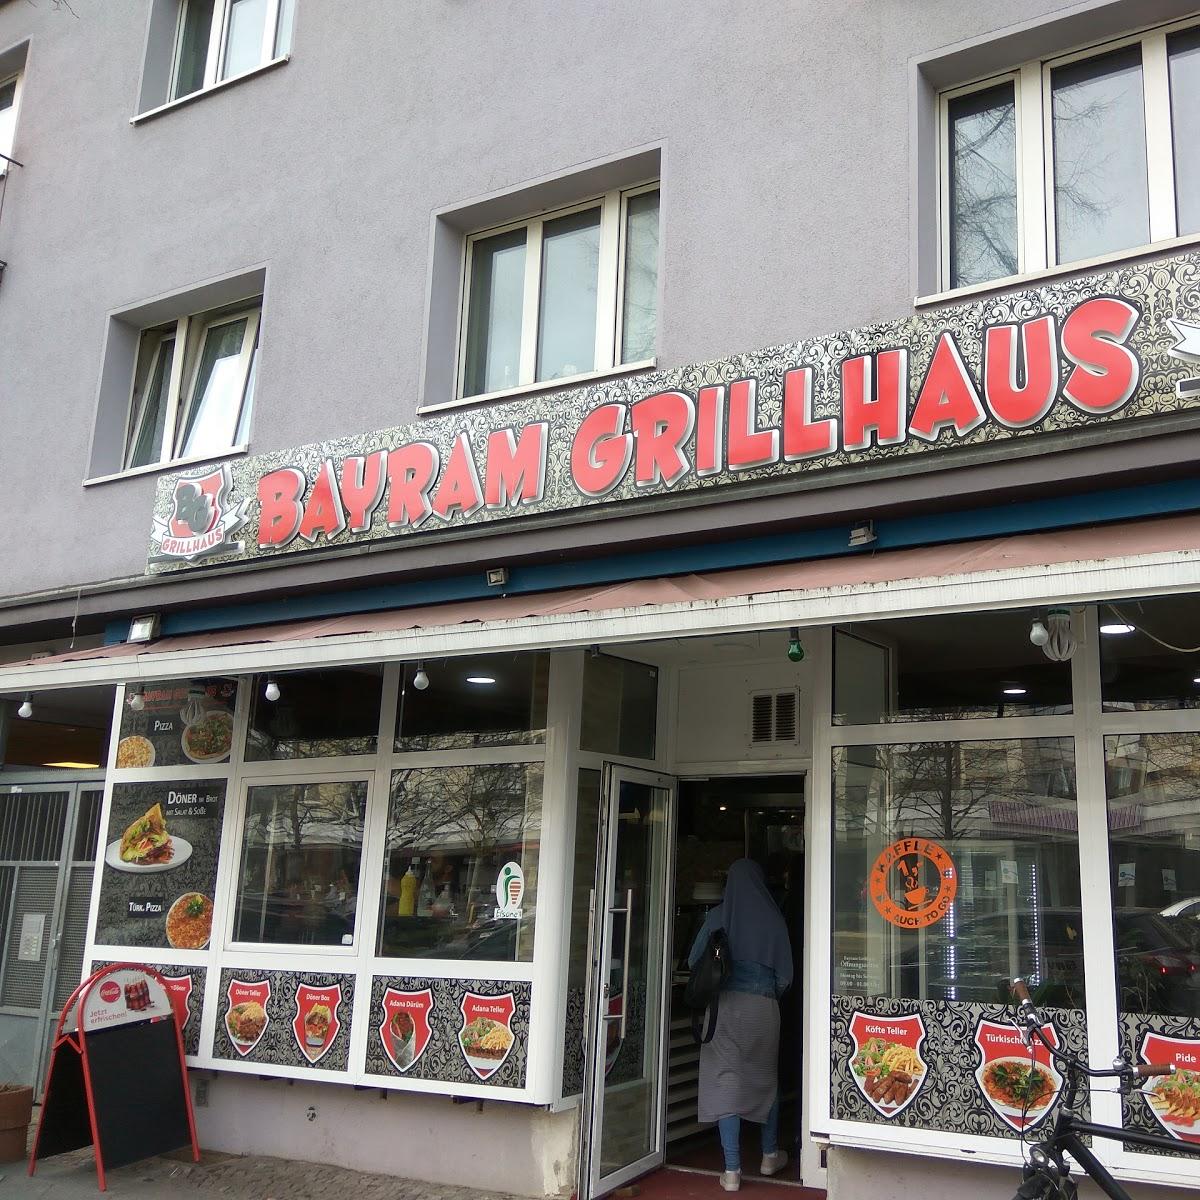 Restaurant "Bayram Grillhaus" in Berlin